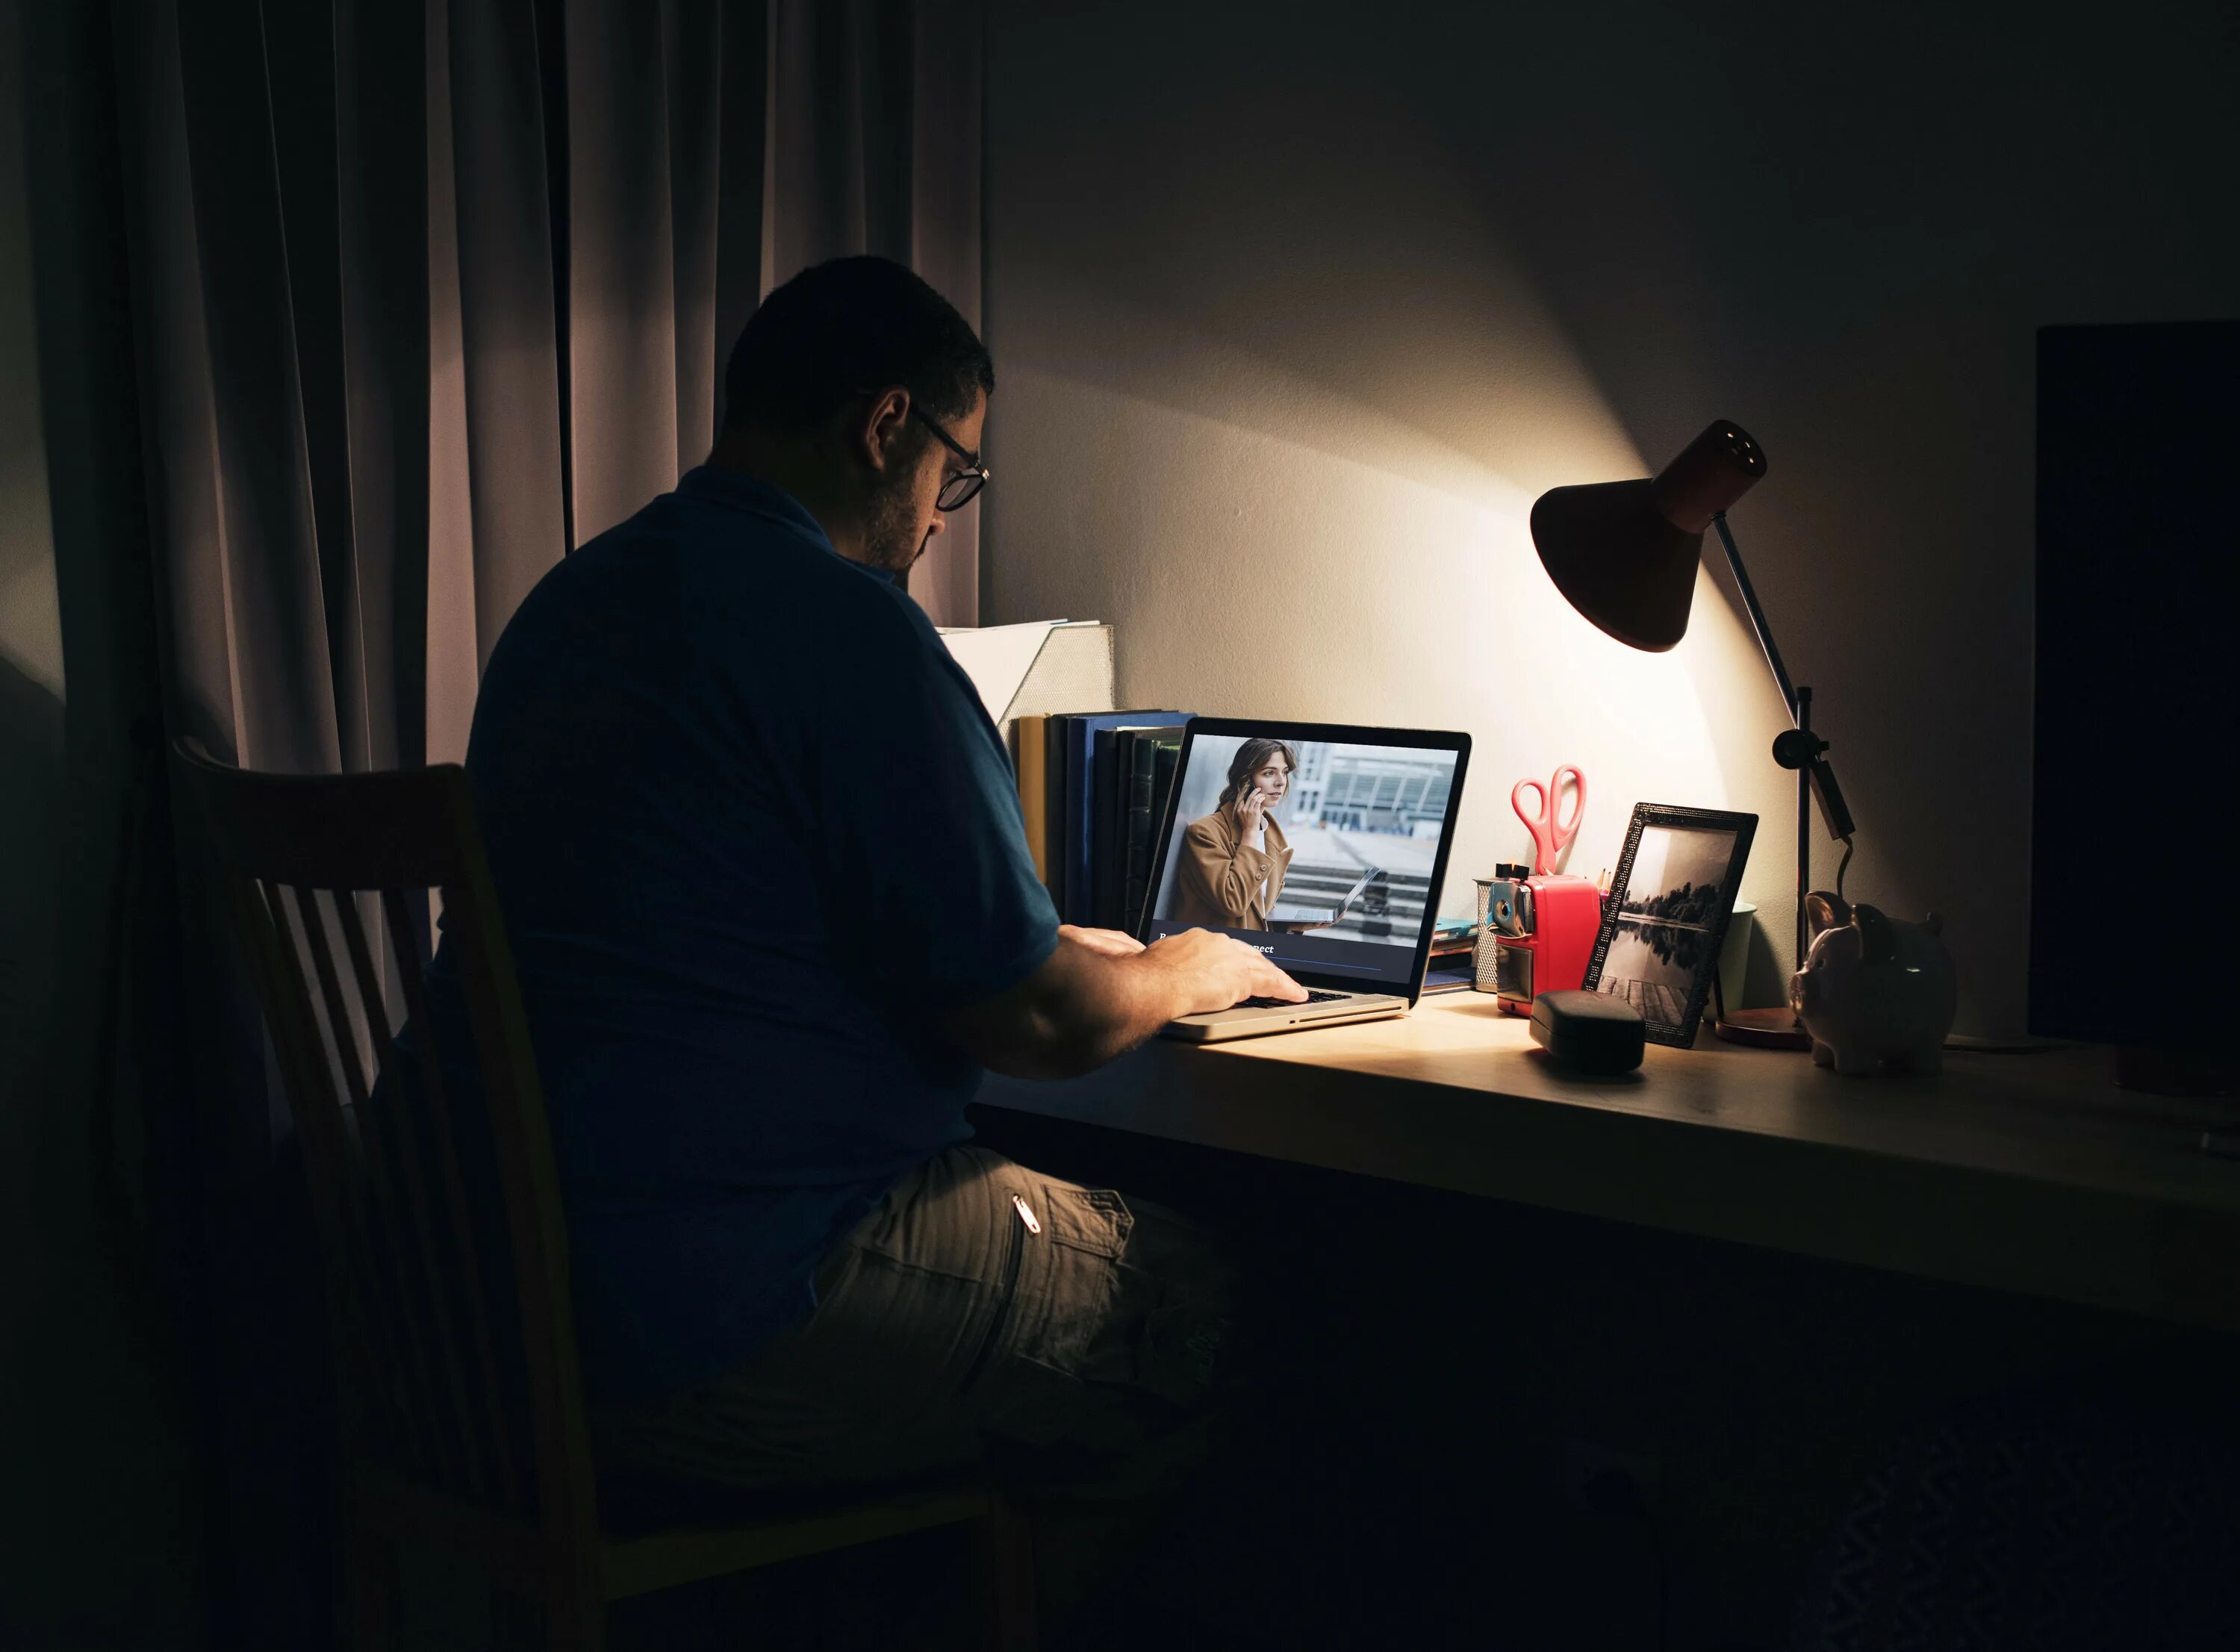 Парень за компьютером со спины. Человек ноутбук лампа. Фото мужчины за компом. Парень дома за компьютером со спины.